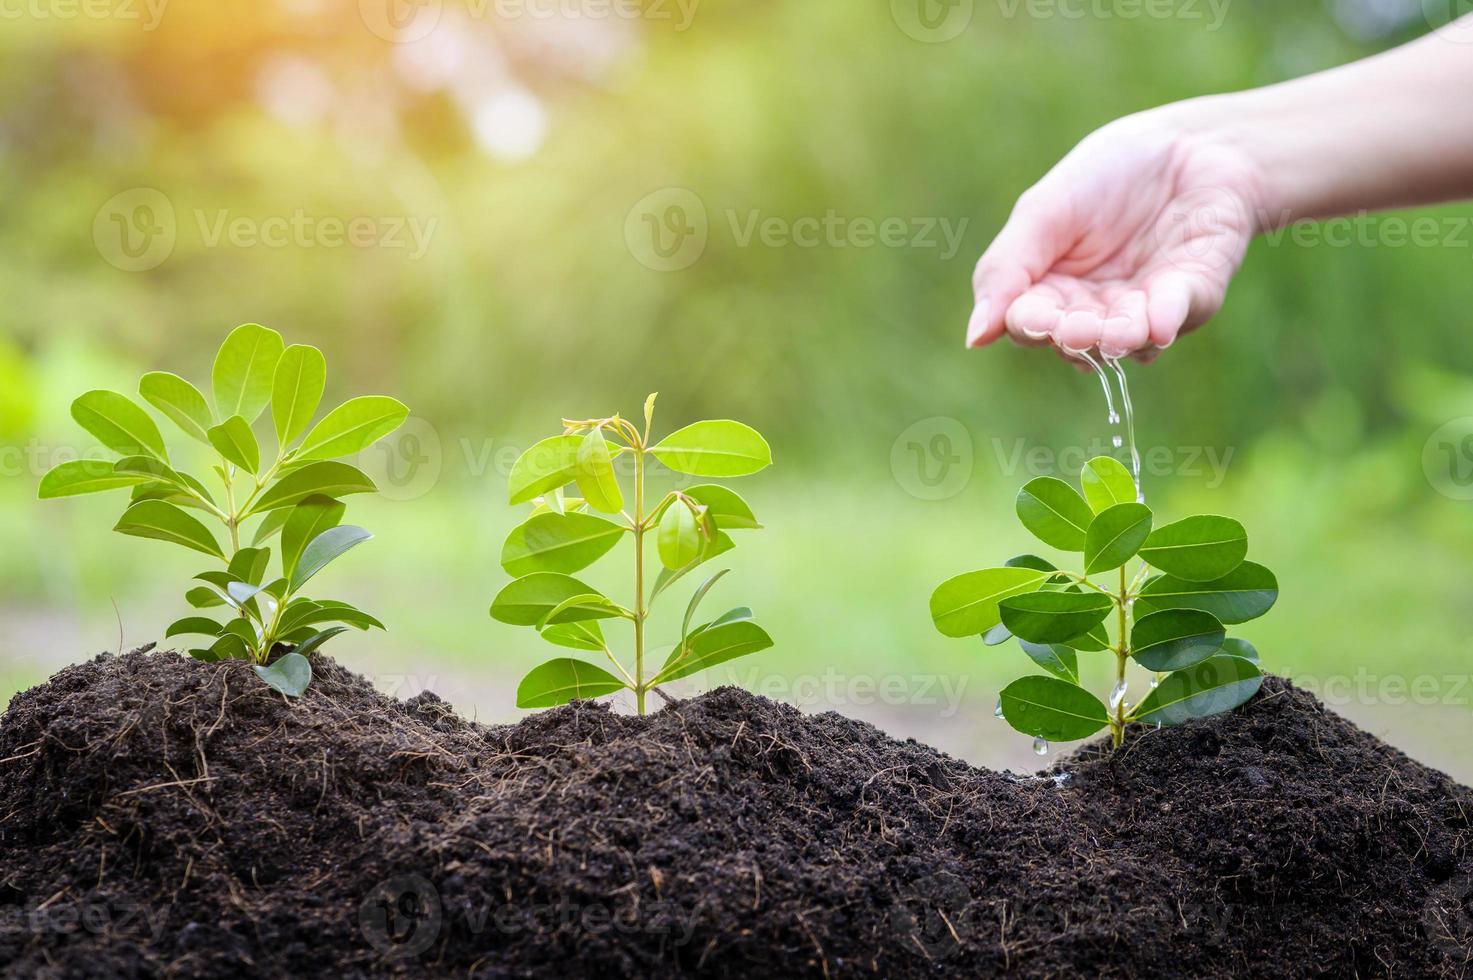 cerrar la mano con agua goteando en la planta en suelos fértiles, concepto de conservación ecológica foto